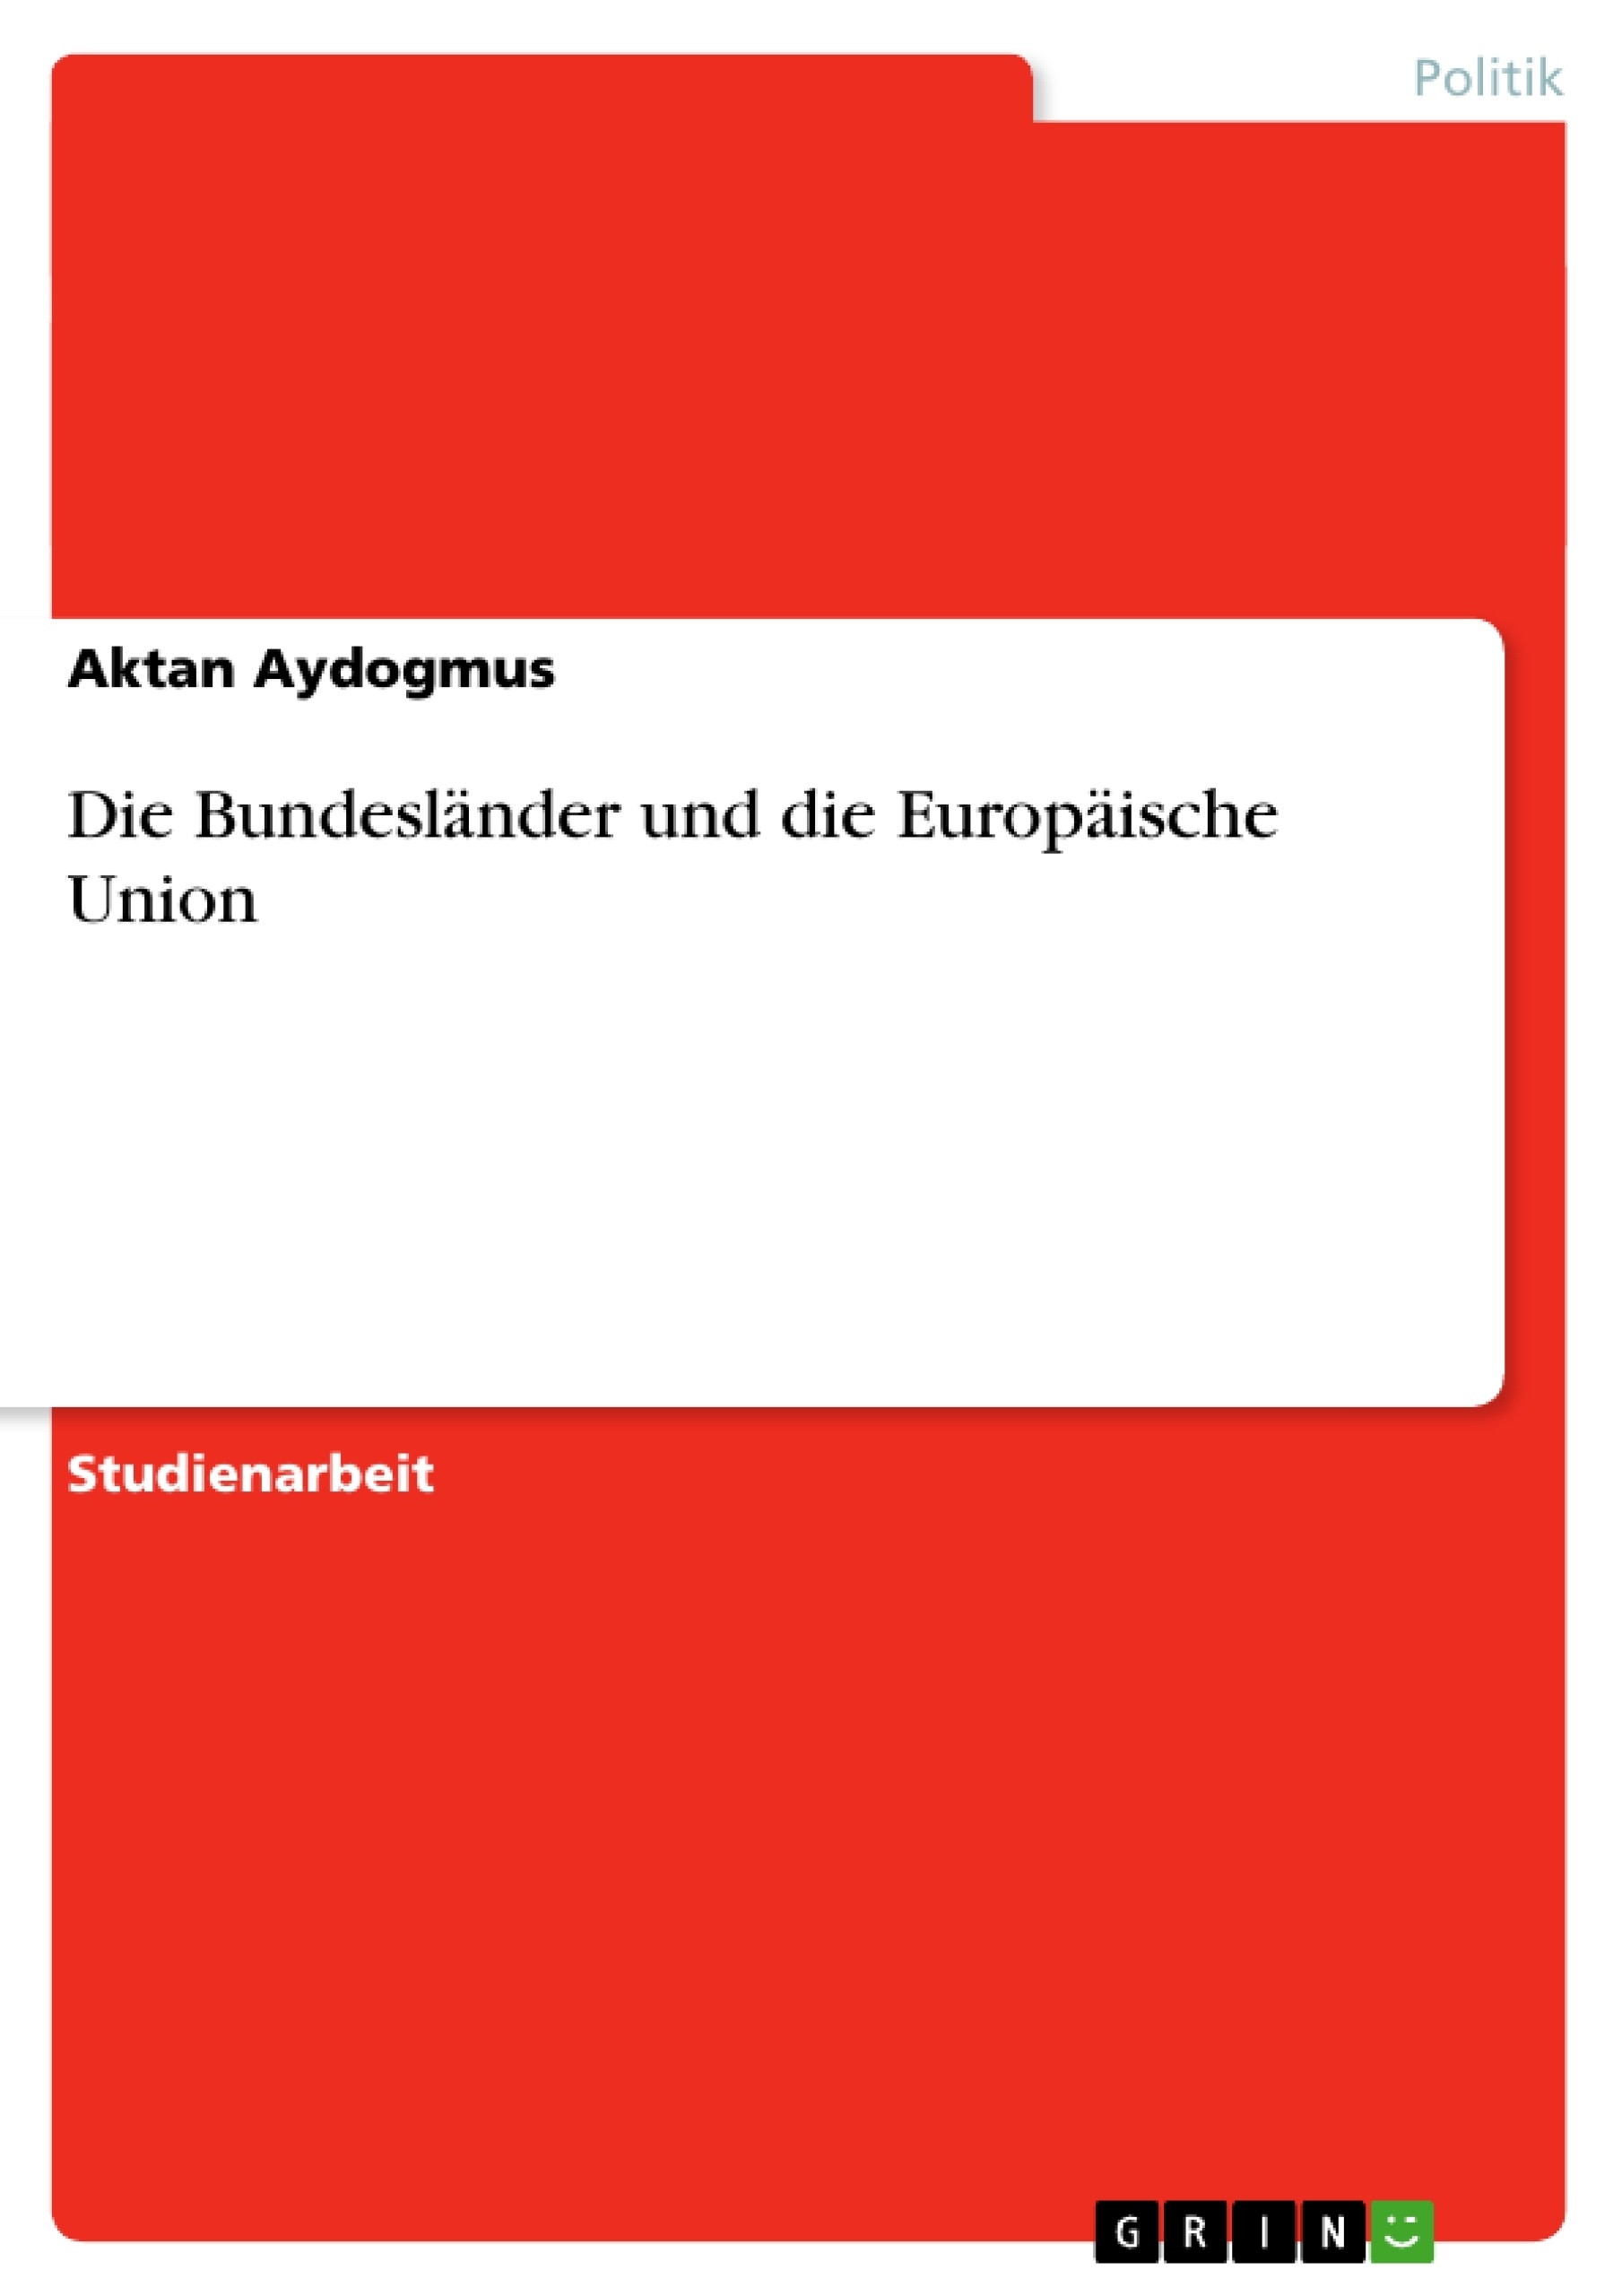 Título: Die Bundesländer und die Europäische Union